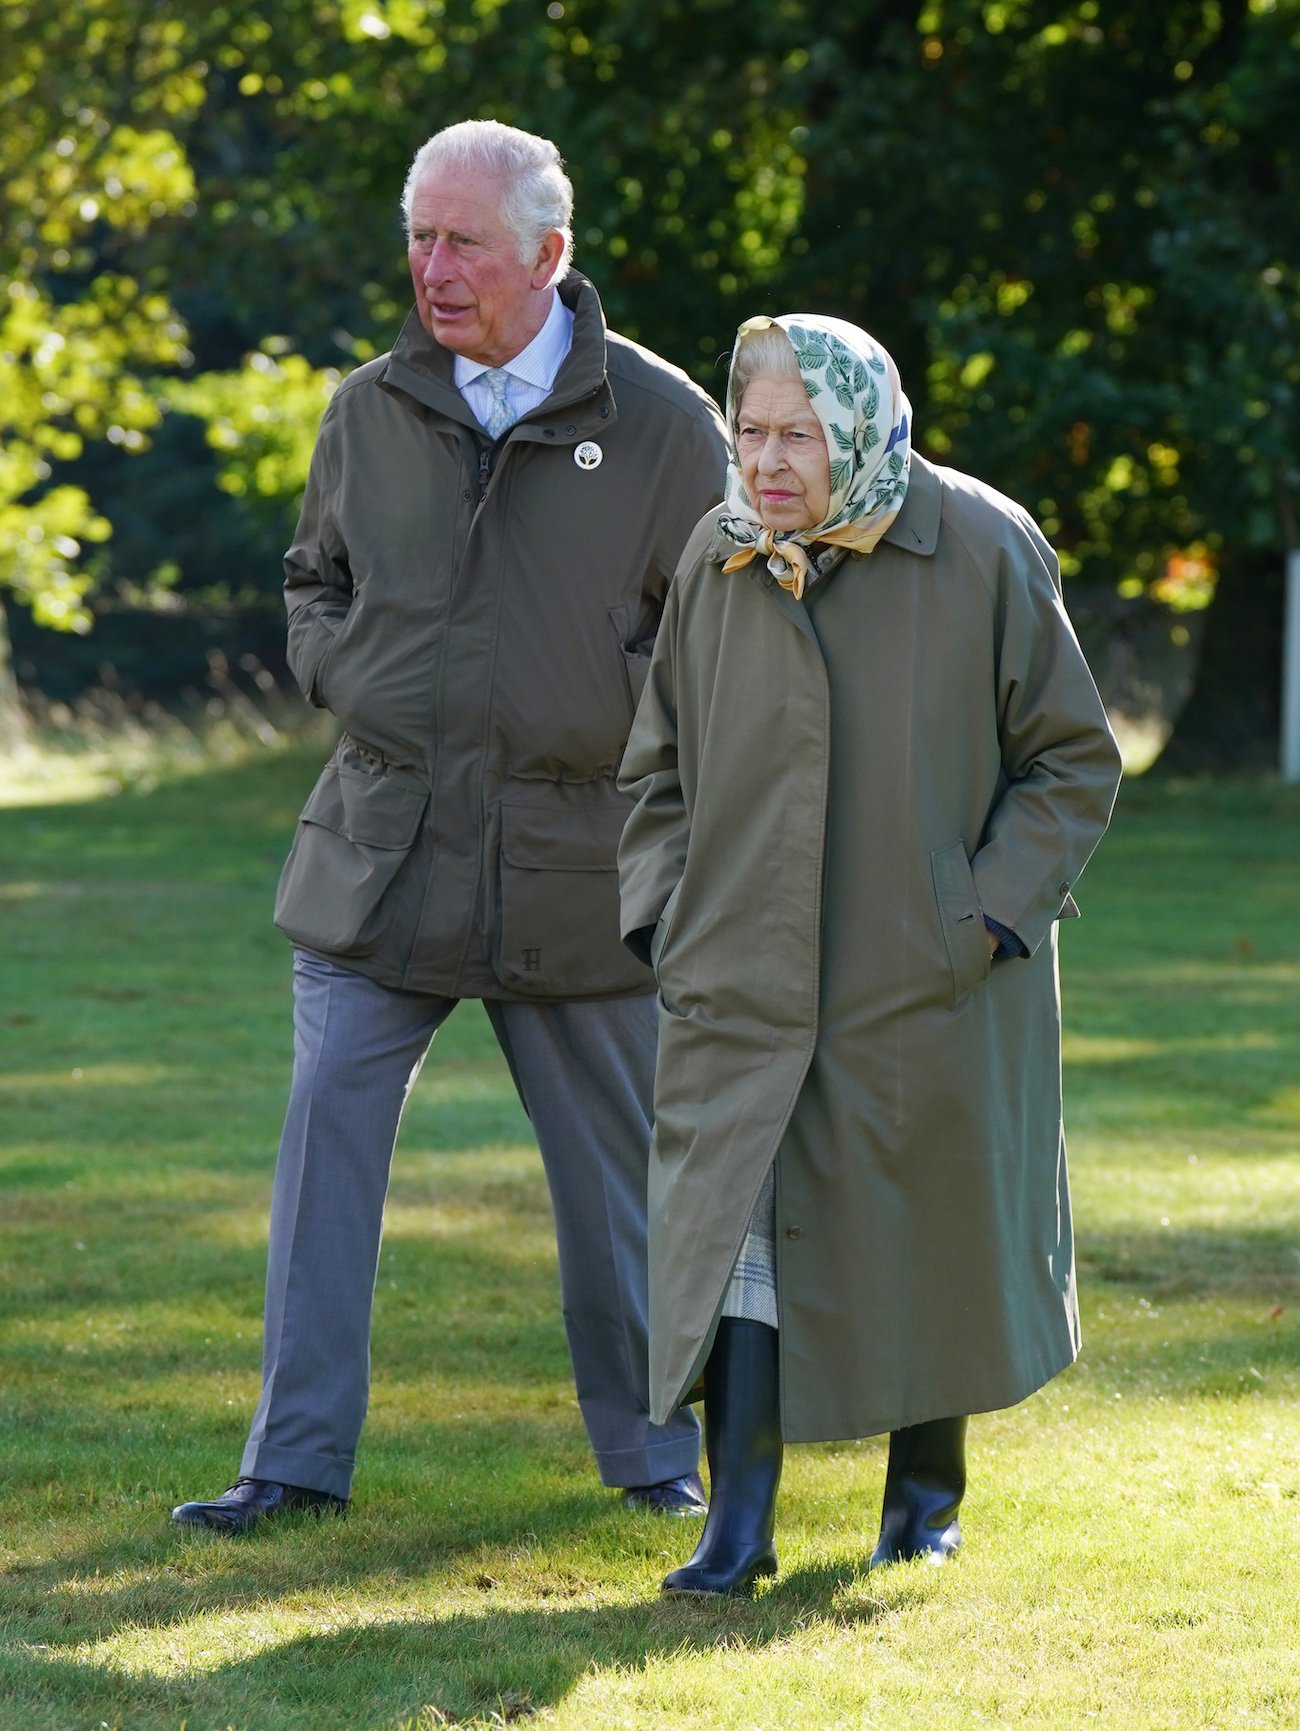 Prince Charles walks behind Queen Elizabeth II on a grassy lawn